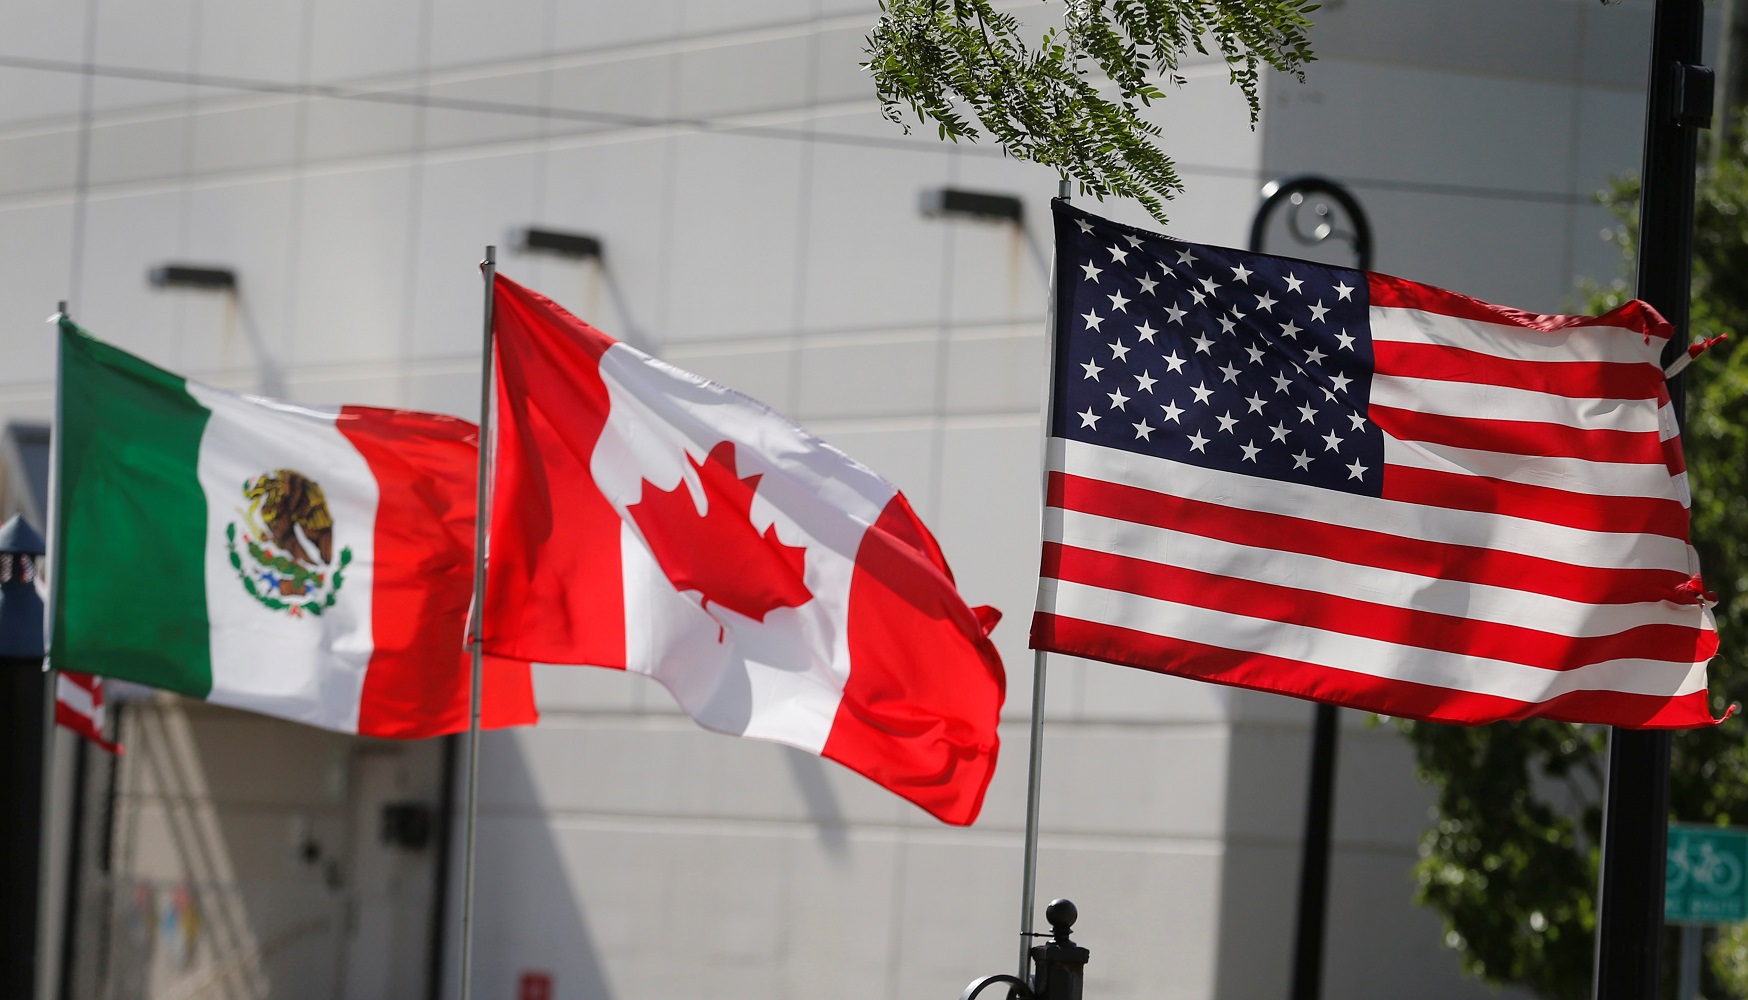 وزارت بازرگانی آمریکا تا ۹ مارس درخصوص تعرفه واردات سازه های فولادی از کانادا، چین و مکزیک تصمیم گیری می کند